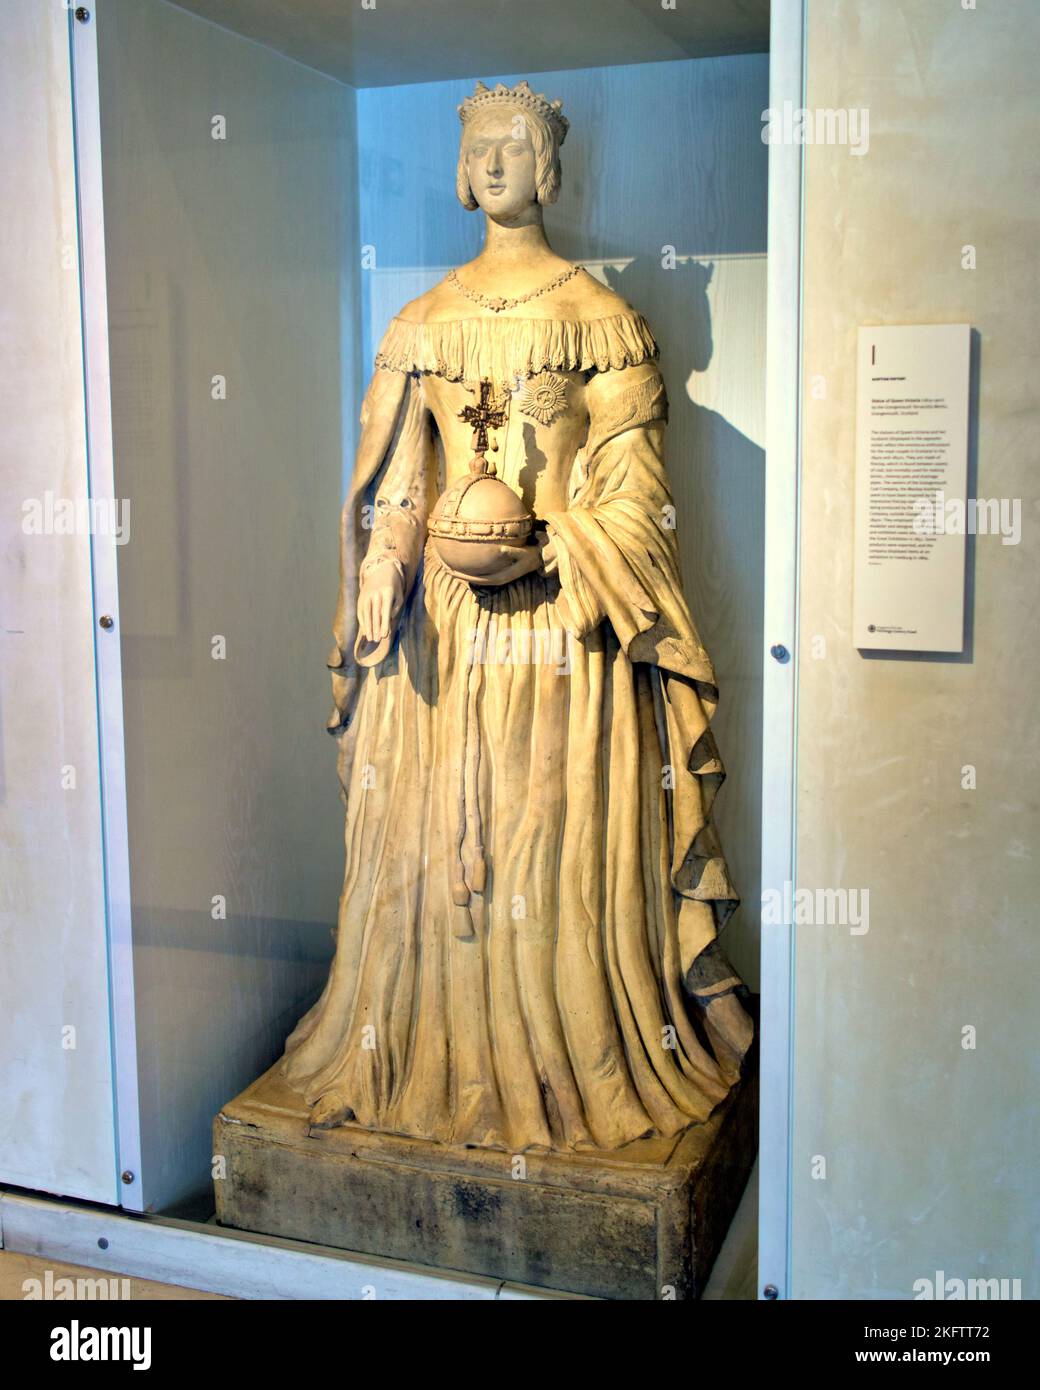 Jeune reine Victoria statue un si une paire avec albert National Museum of Scotland, Chambers St, Édimbourg EH1 1JF Banque D'Images